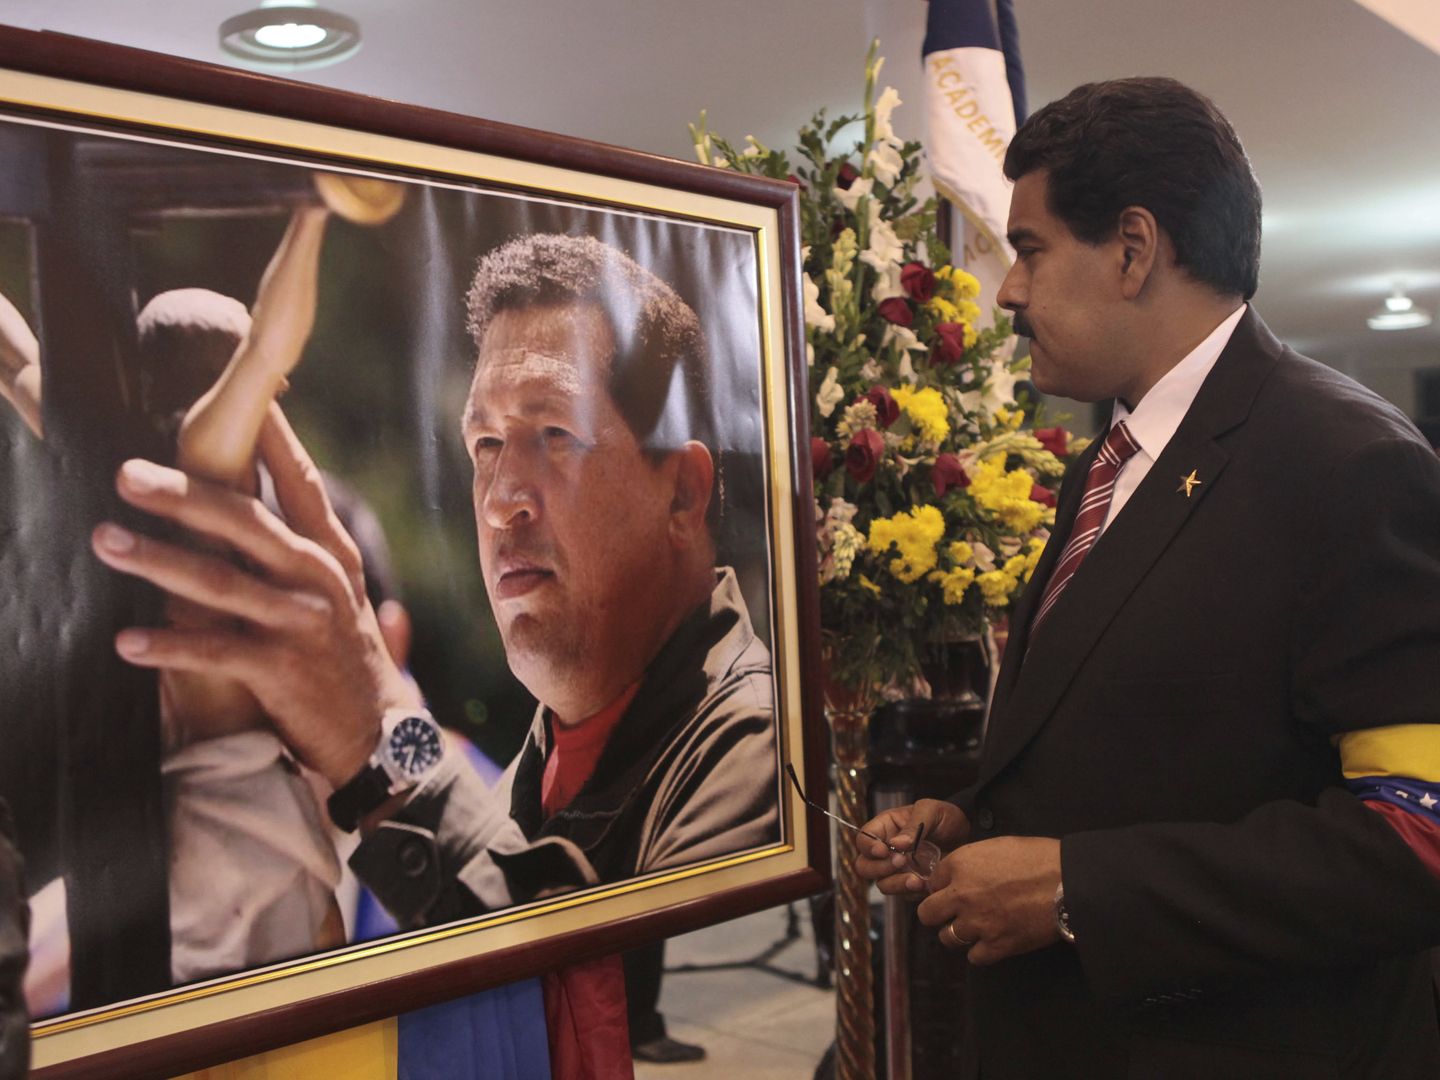 El líder venezolano, Nicolás Maduro, contempla un retrato de Hugo Chávez en su funeral (Reuters).